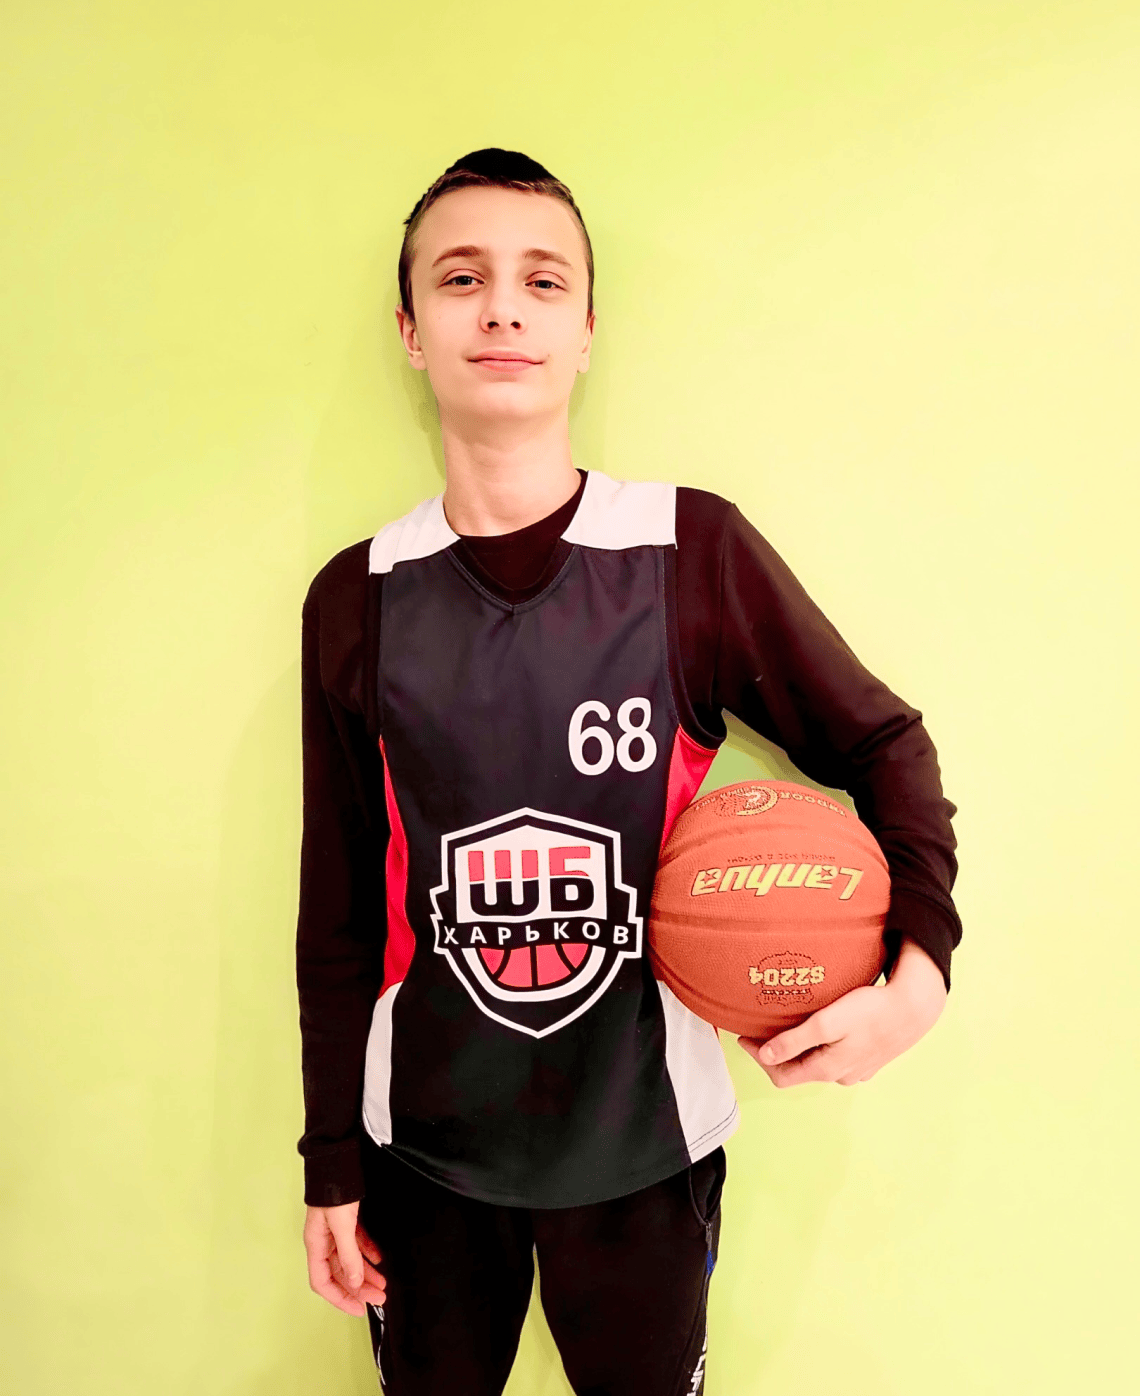 Руслан з Харкова, 14 років